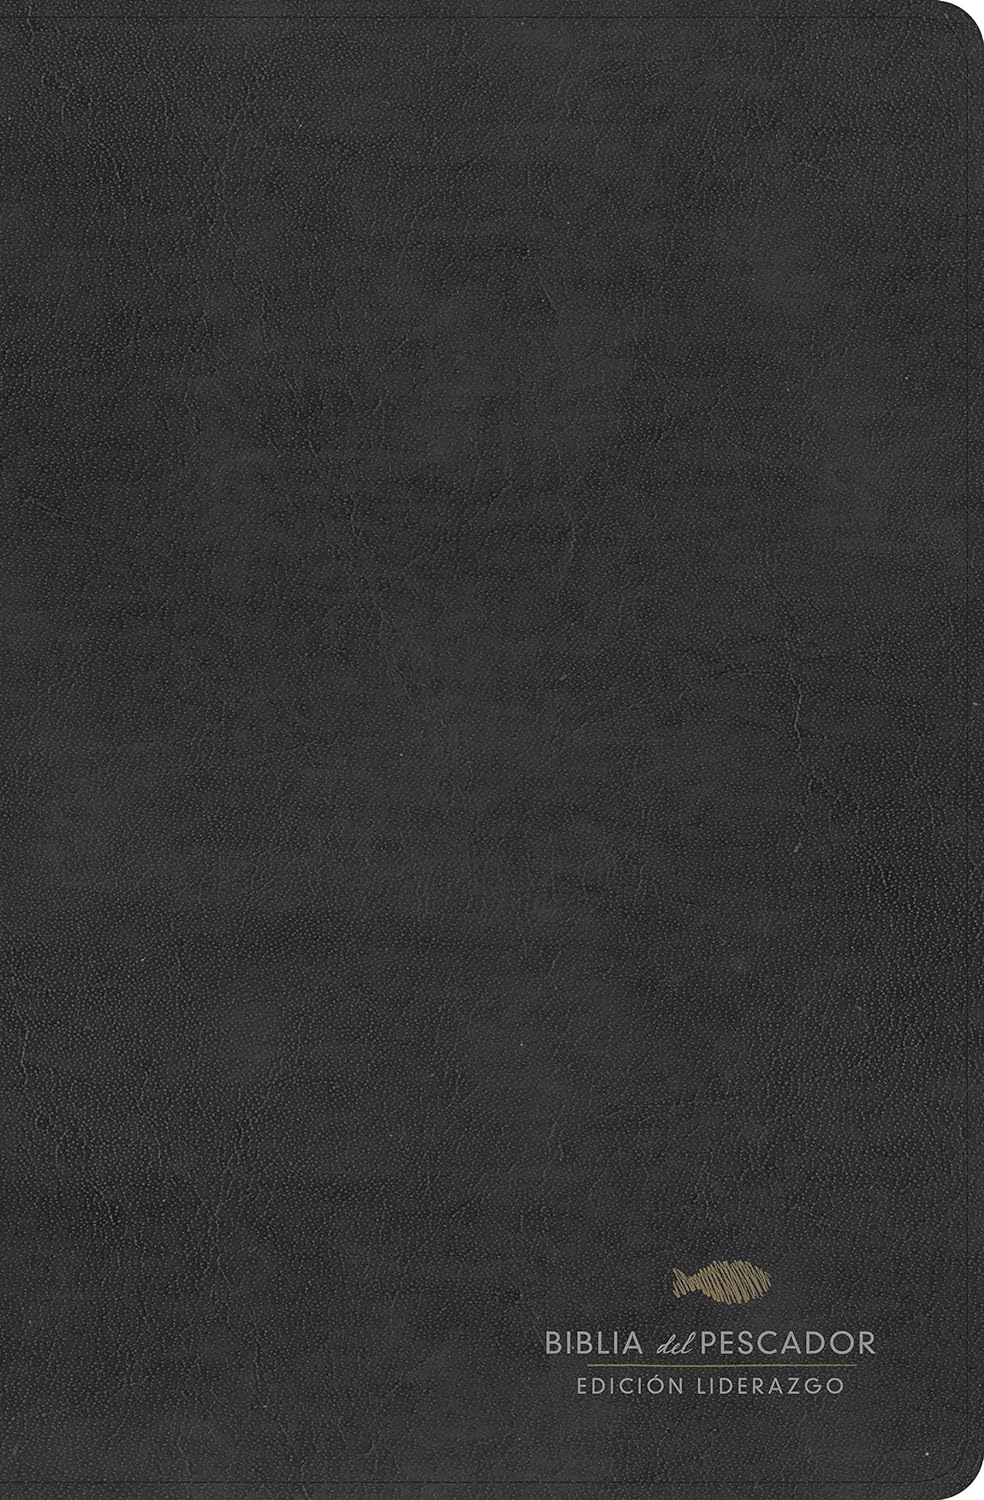 Rvr 1960 Biblia del Pescador: Edición Liderazgo, Negro Piel Fabricada